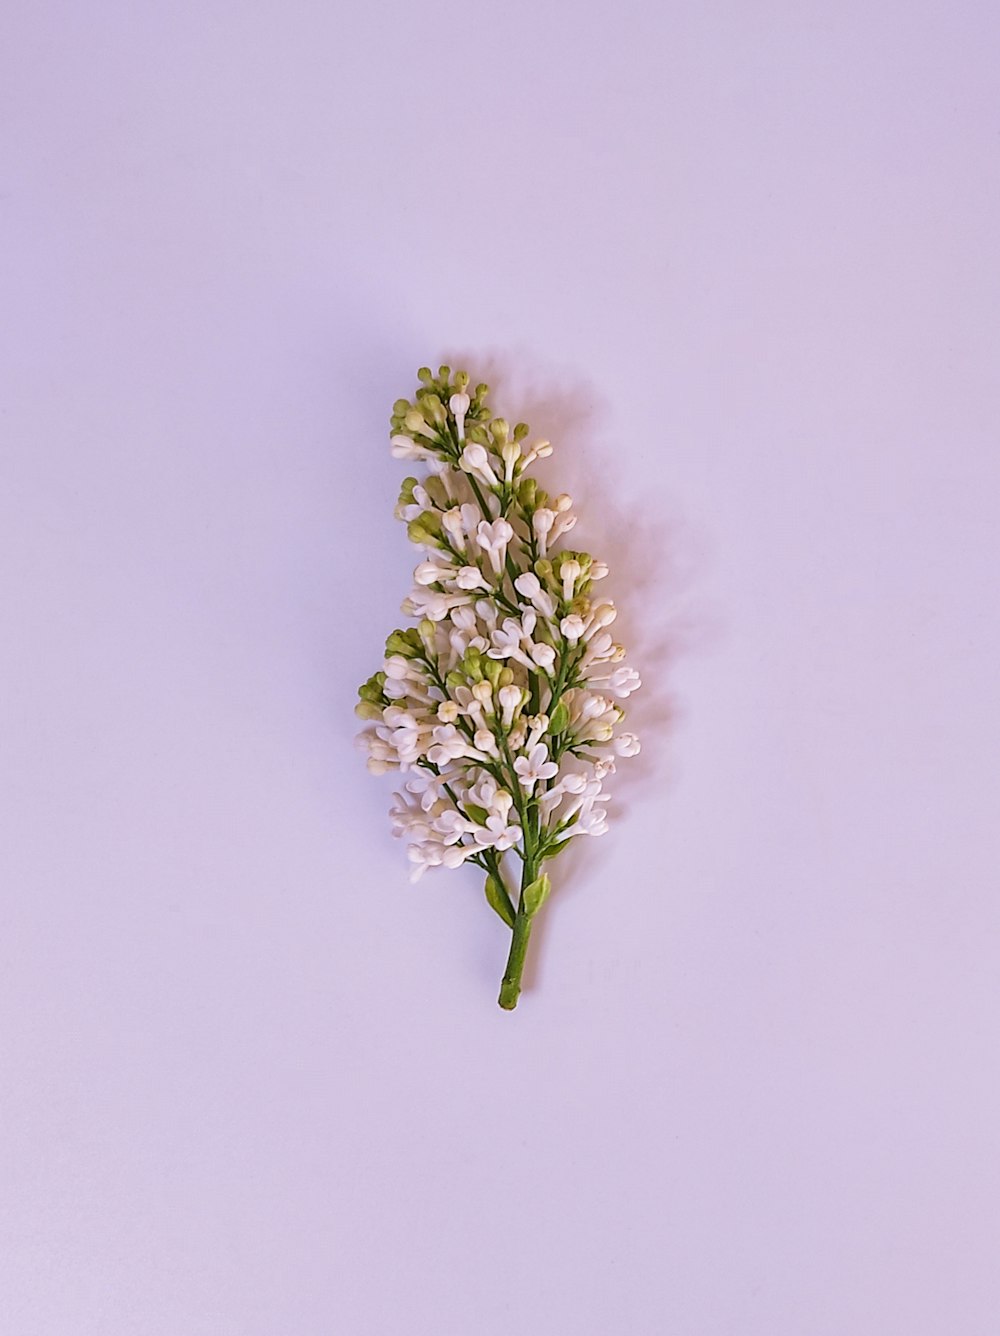 una sola flor blanca sobre un fondo blanco